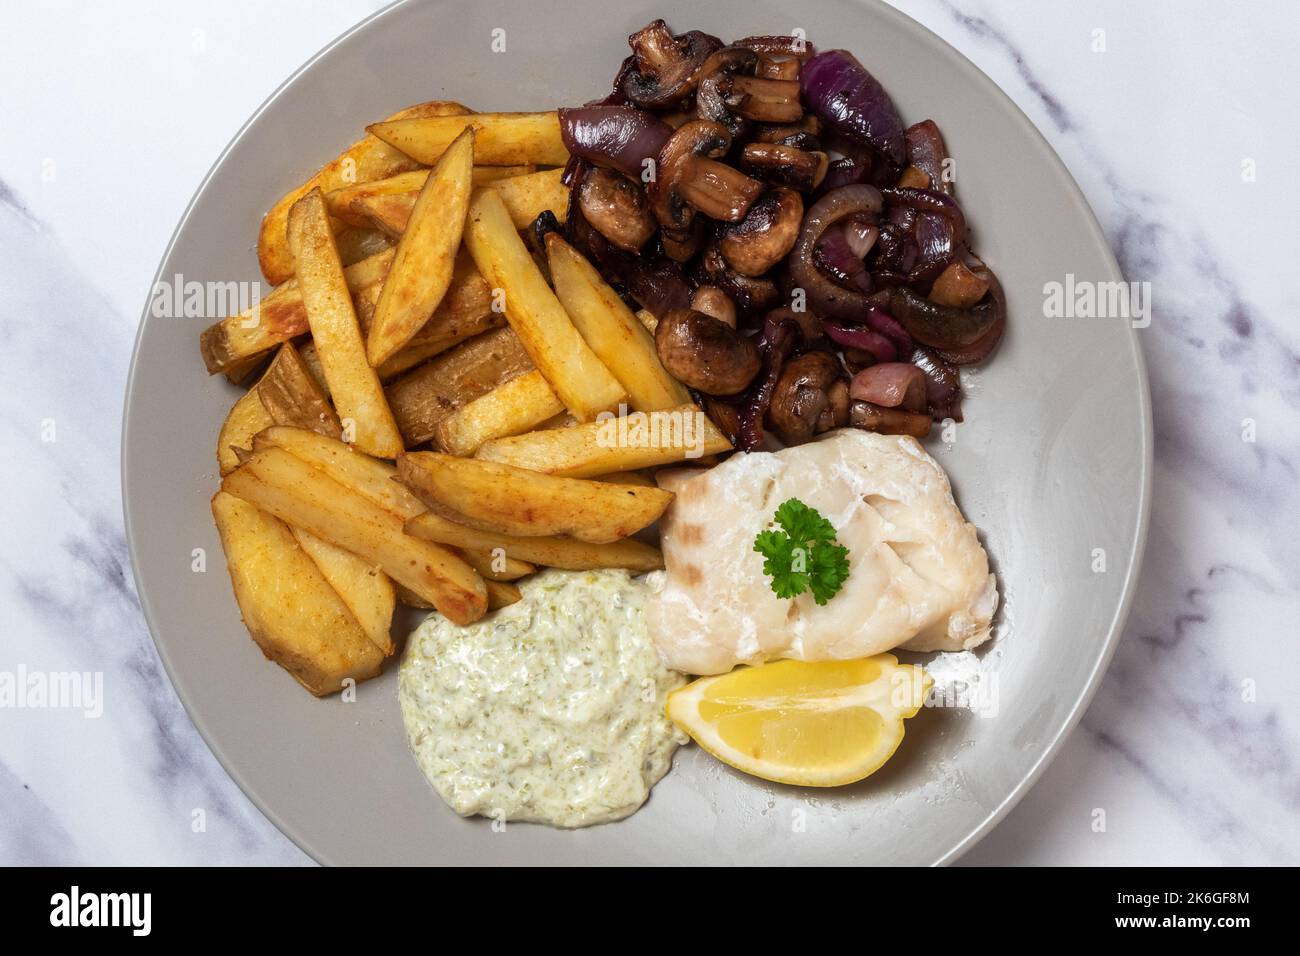 Filet de cabillaud cuit au four, peau sur les croustilles, champignons sautés et oignon rouge, sauce tartare, vue d'en haut Banque D'Images